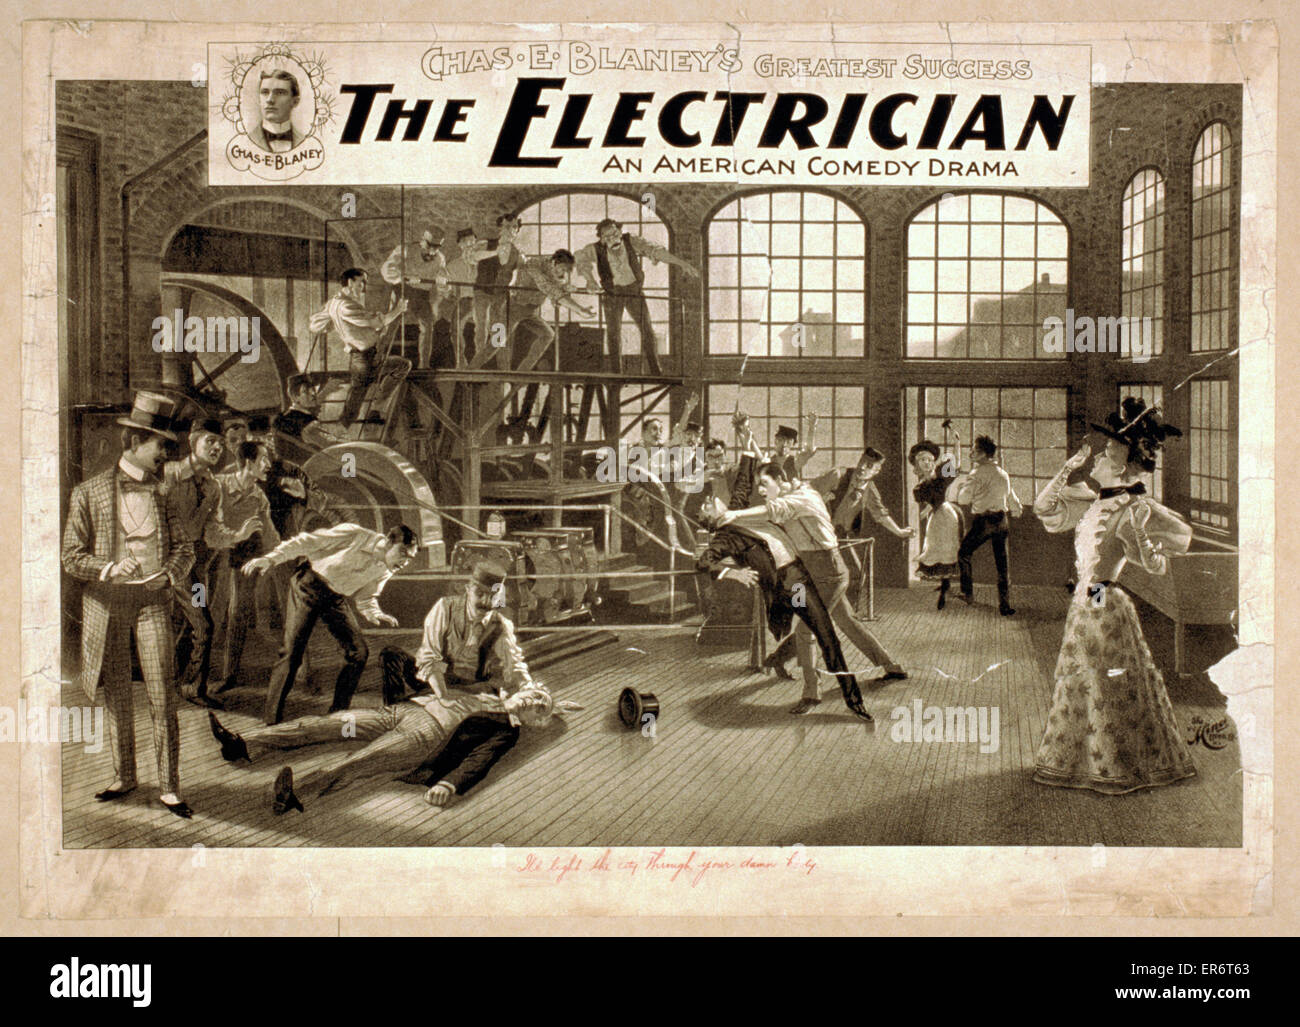 L'elettricista un dramma comico americano : Chas. E. Blaney Foto Stock